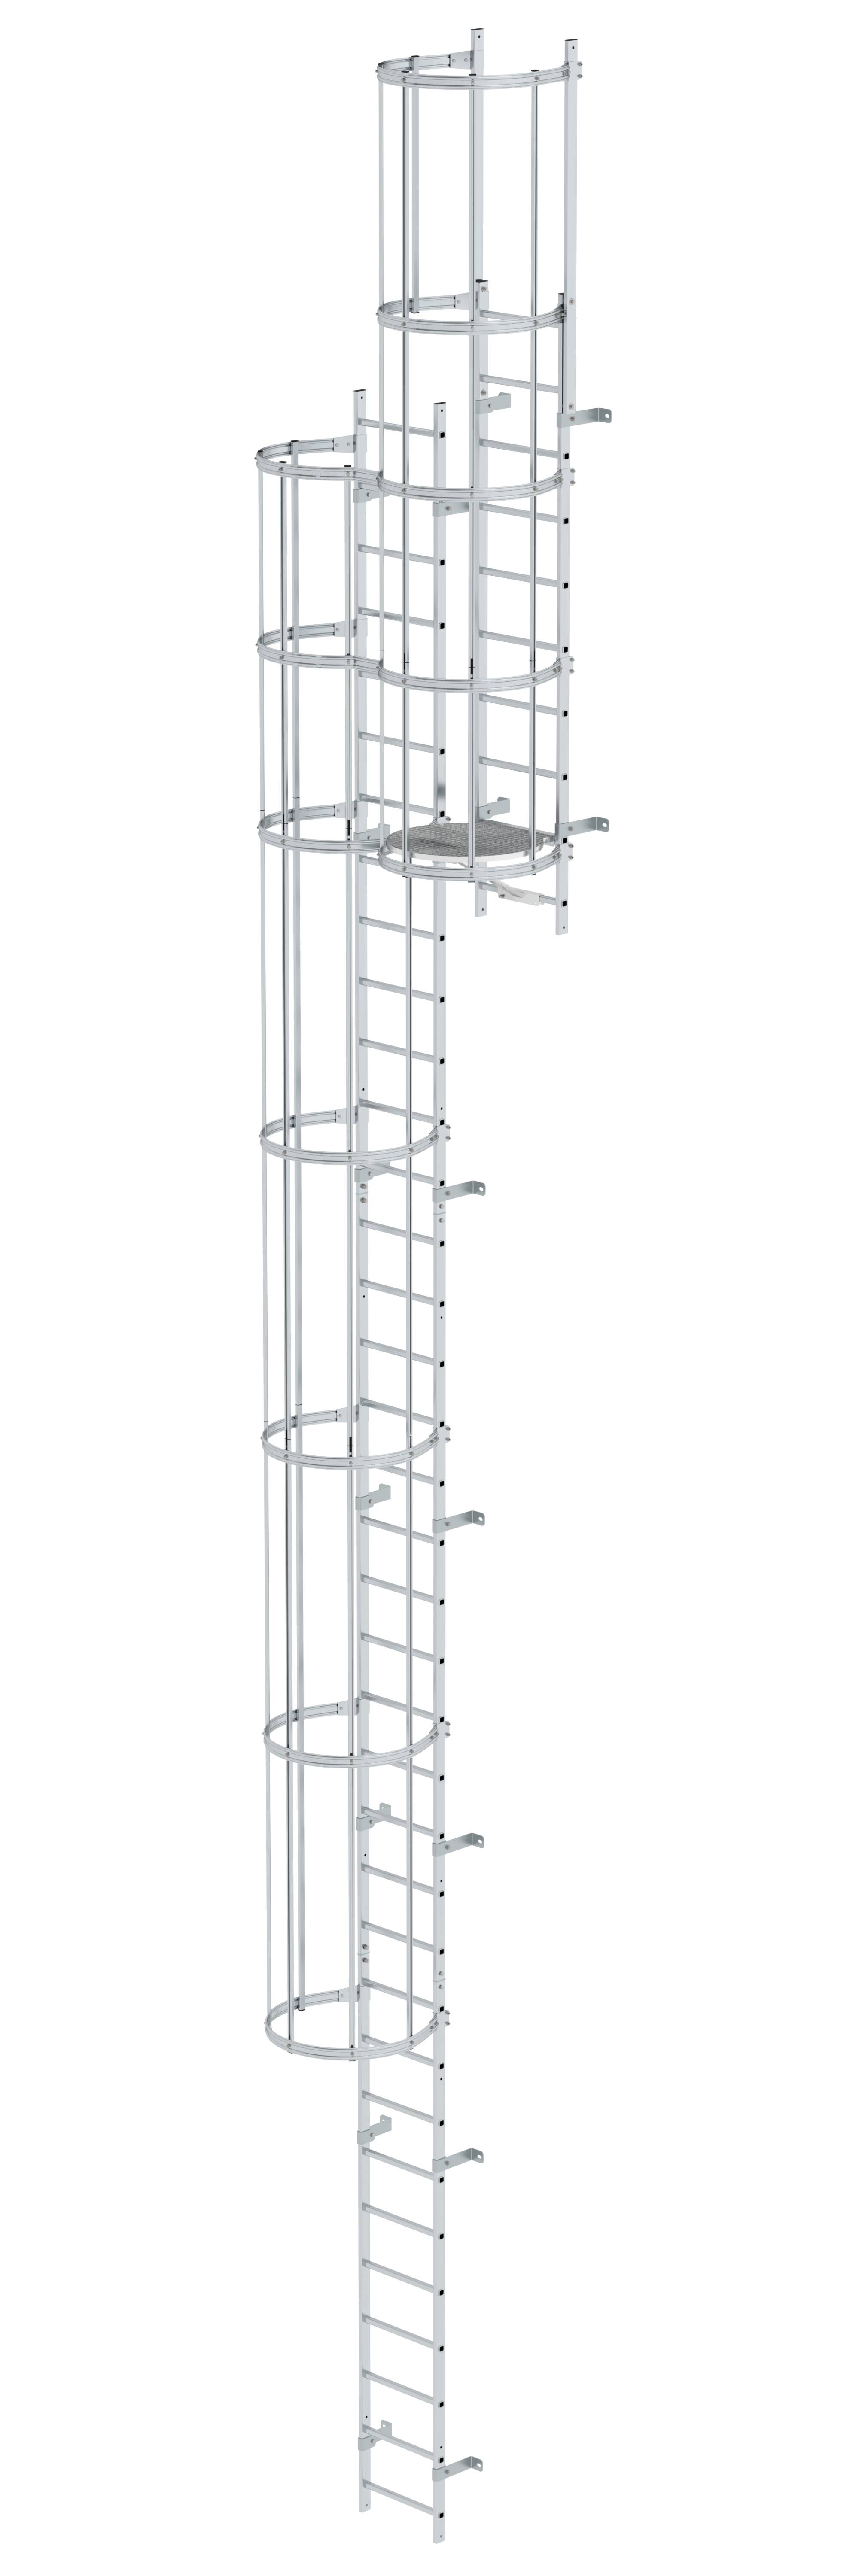 Mehrzügige Steigleiter mit Rückenschutz (Bau) Aluminium blank 11,84m